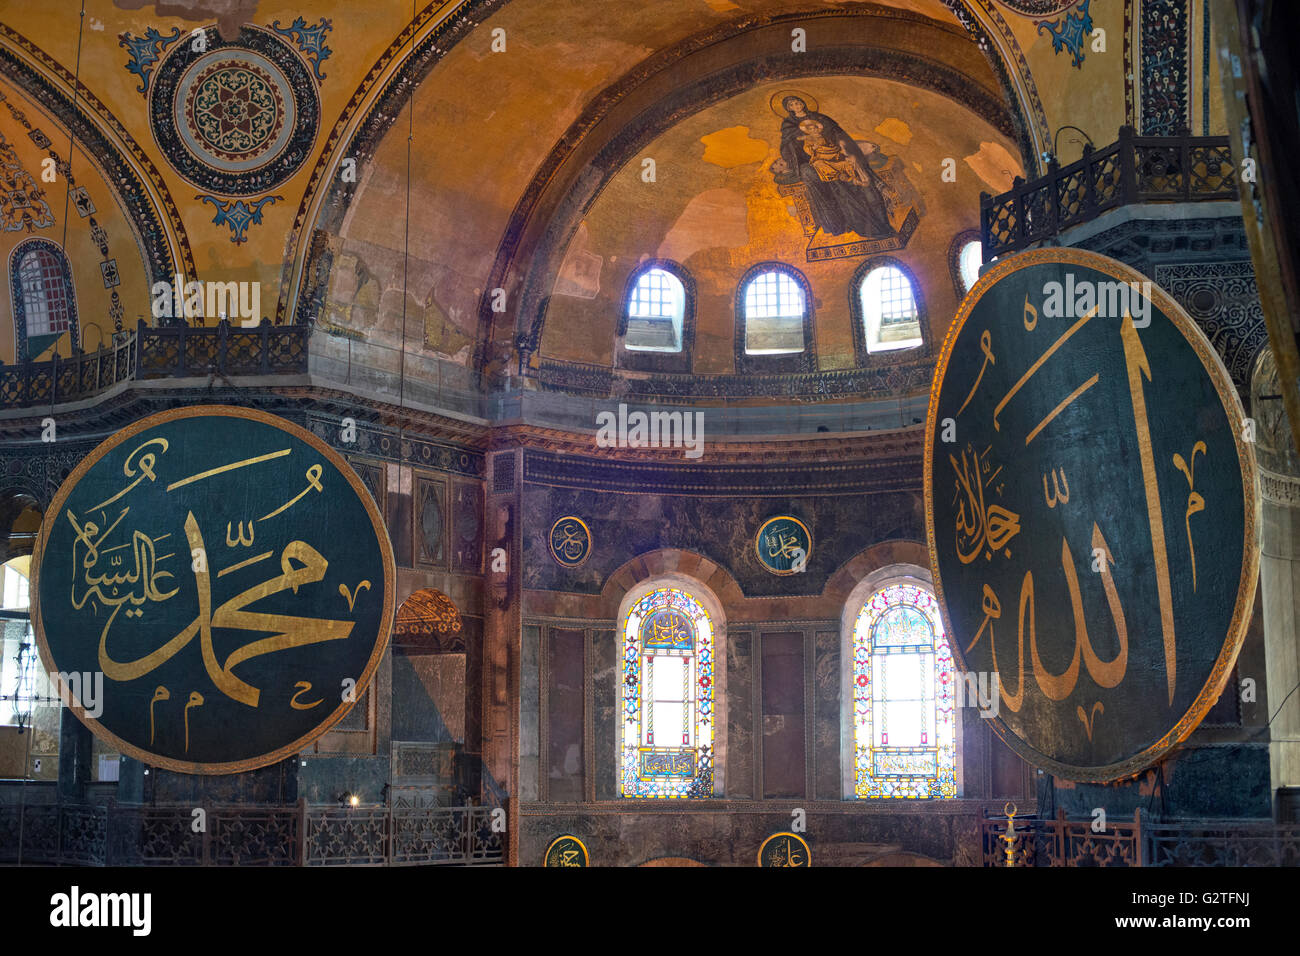 Interno di Hagia Sophia a Istanbul, Turchia. Hagia Sophia è ex ortodossi basilica patriarcale, più tardi una moschea. Foto Stock